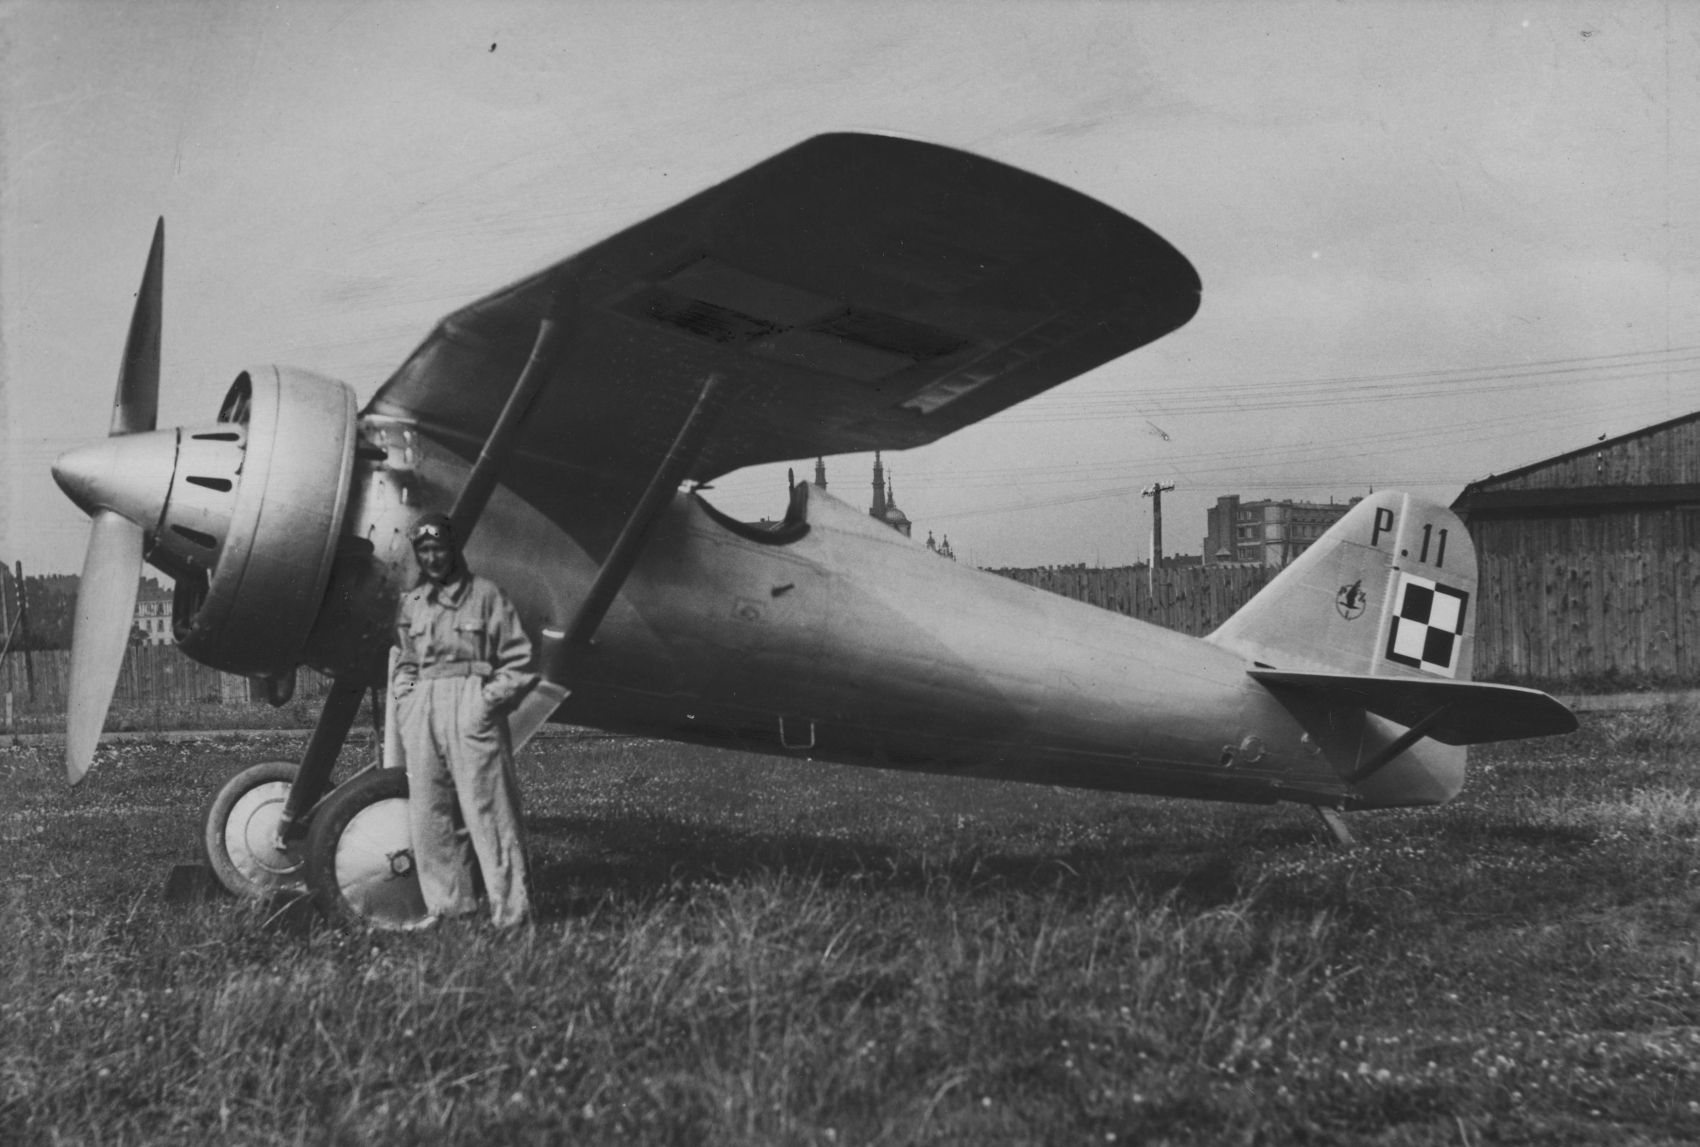 PZL P-11/III prototype, 1932